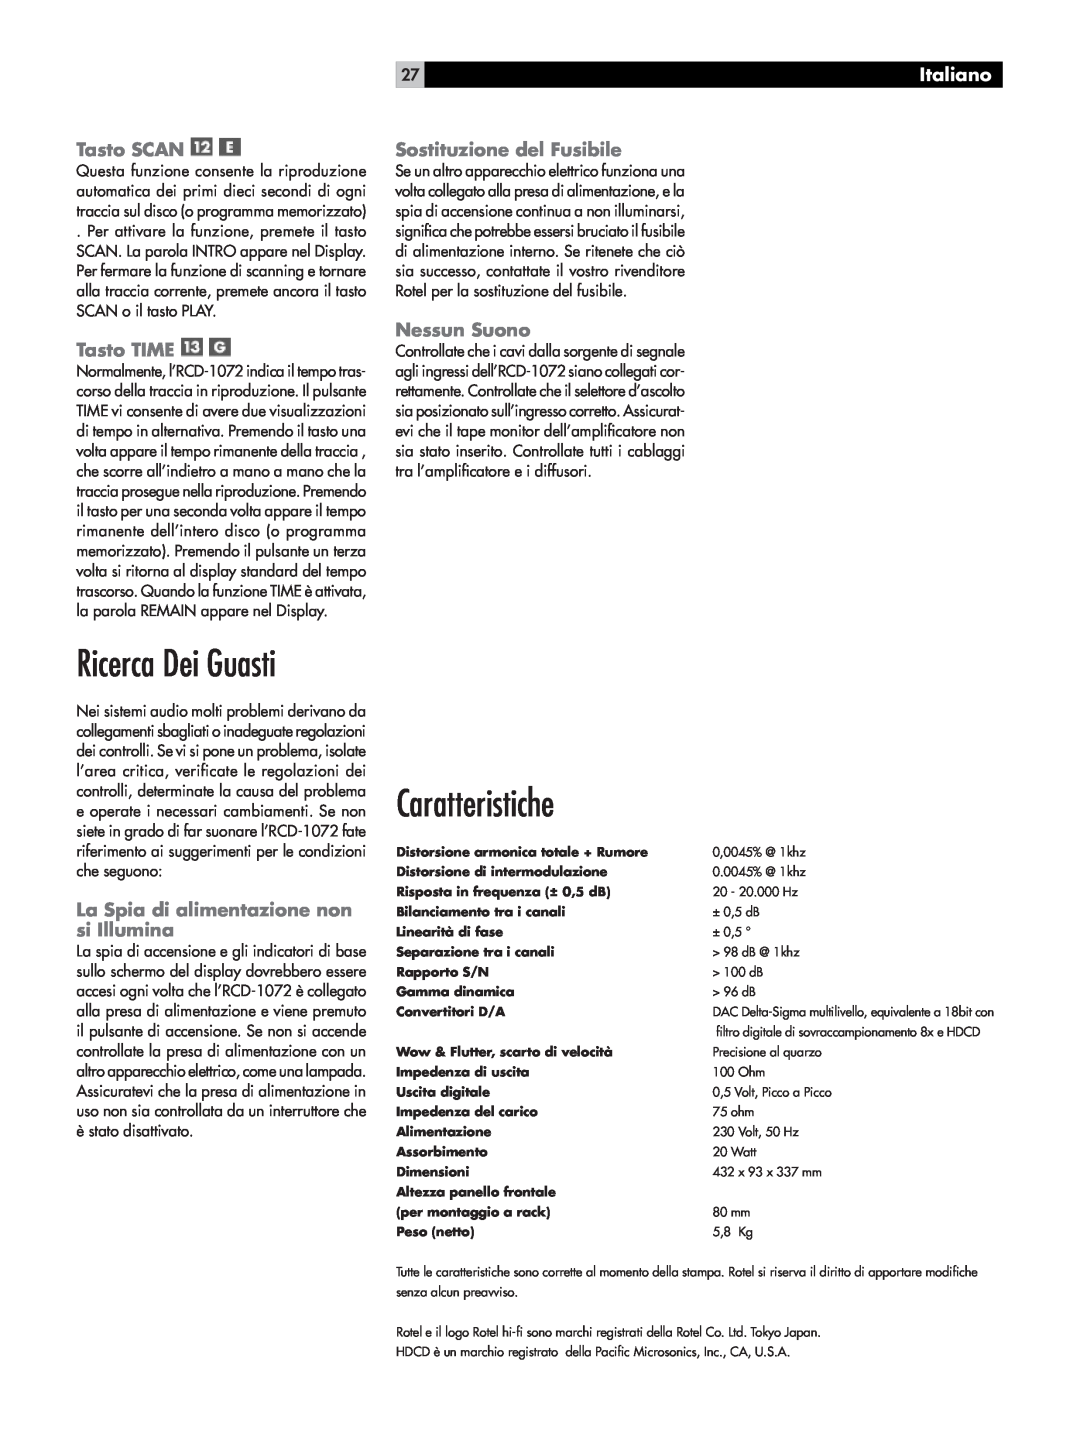 Rotel RCD-1072 Ricerca Dei Guasti, Caratteristiche, Tasto SCAN, Tasto TIME, Sostituzione del Fusibile, Nessun Suono 